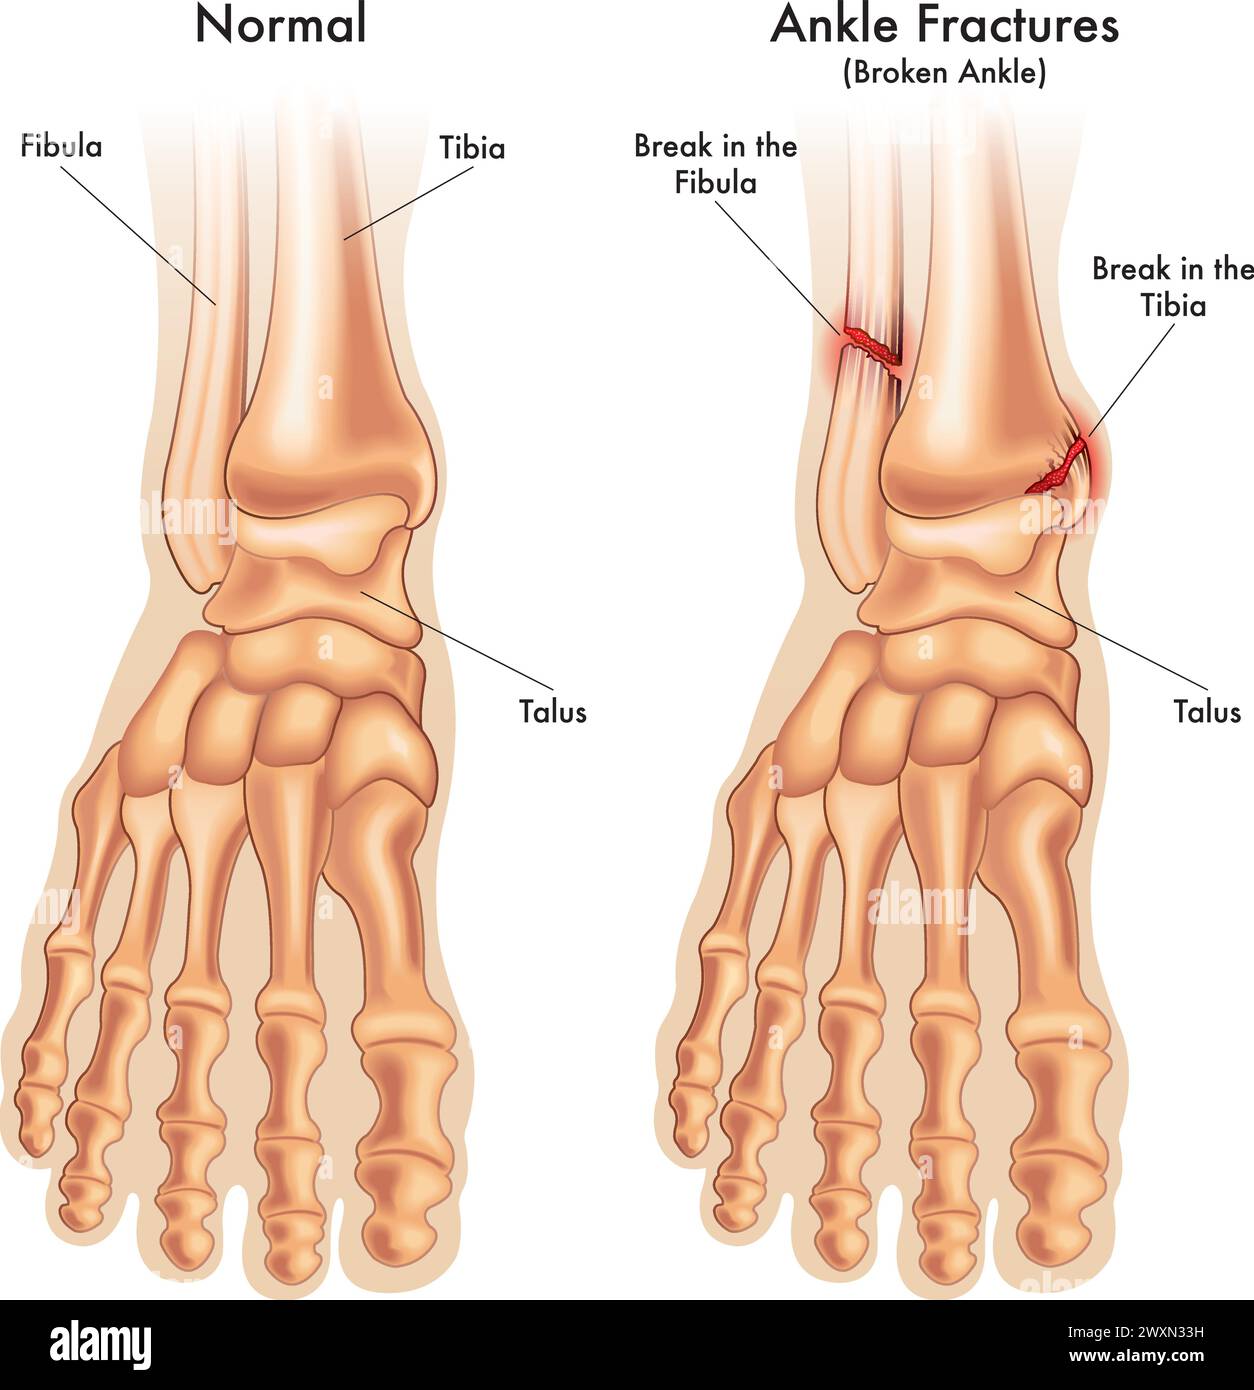 l'illustration médicale compare une cheville de pied normale, avec une cheville de pied fracturée en deux endroits, avec des annotations. Illustration de Vecteur